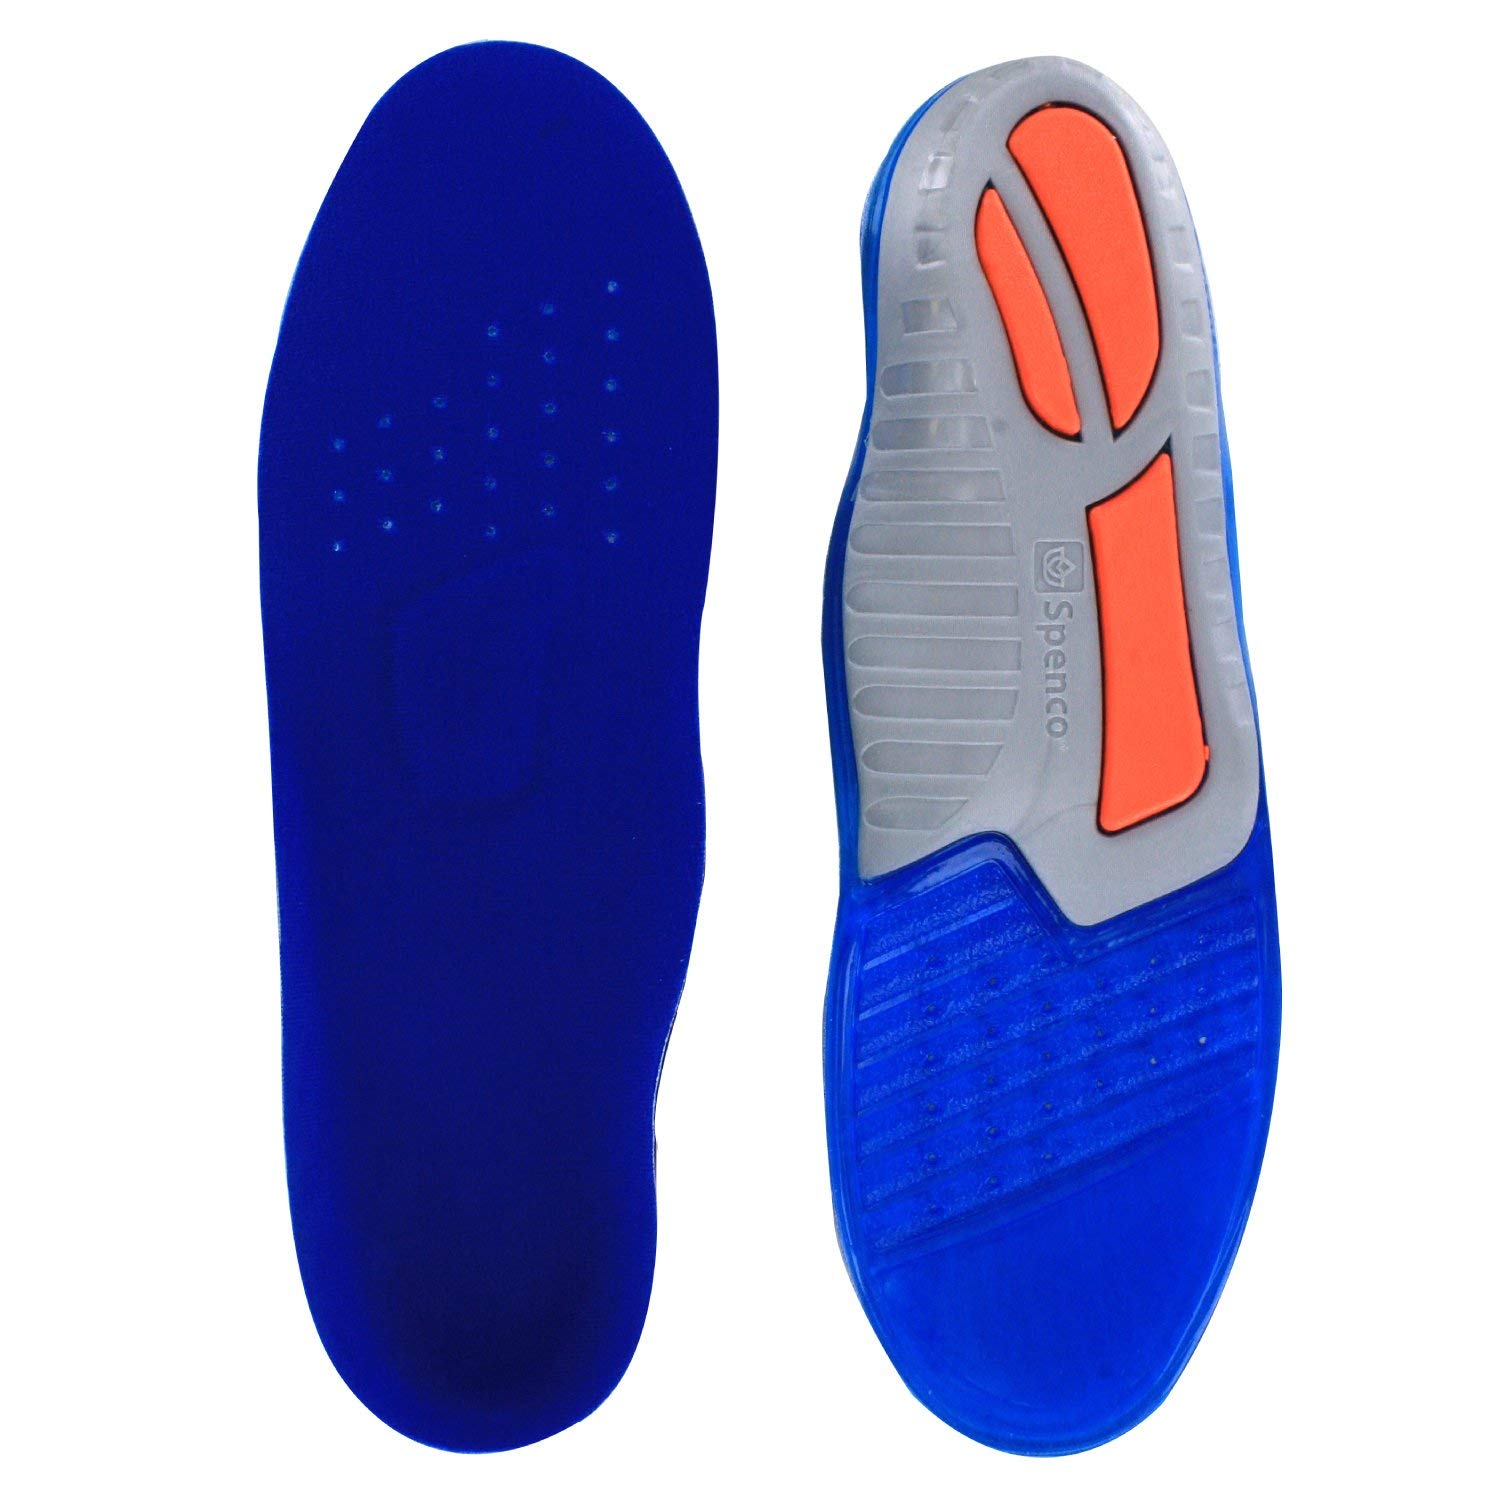 Lót Giày Silicon Total Support Gel Spenco 46-300 - Đế lót gel giảm đau gót chân, gai gót